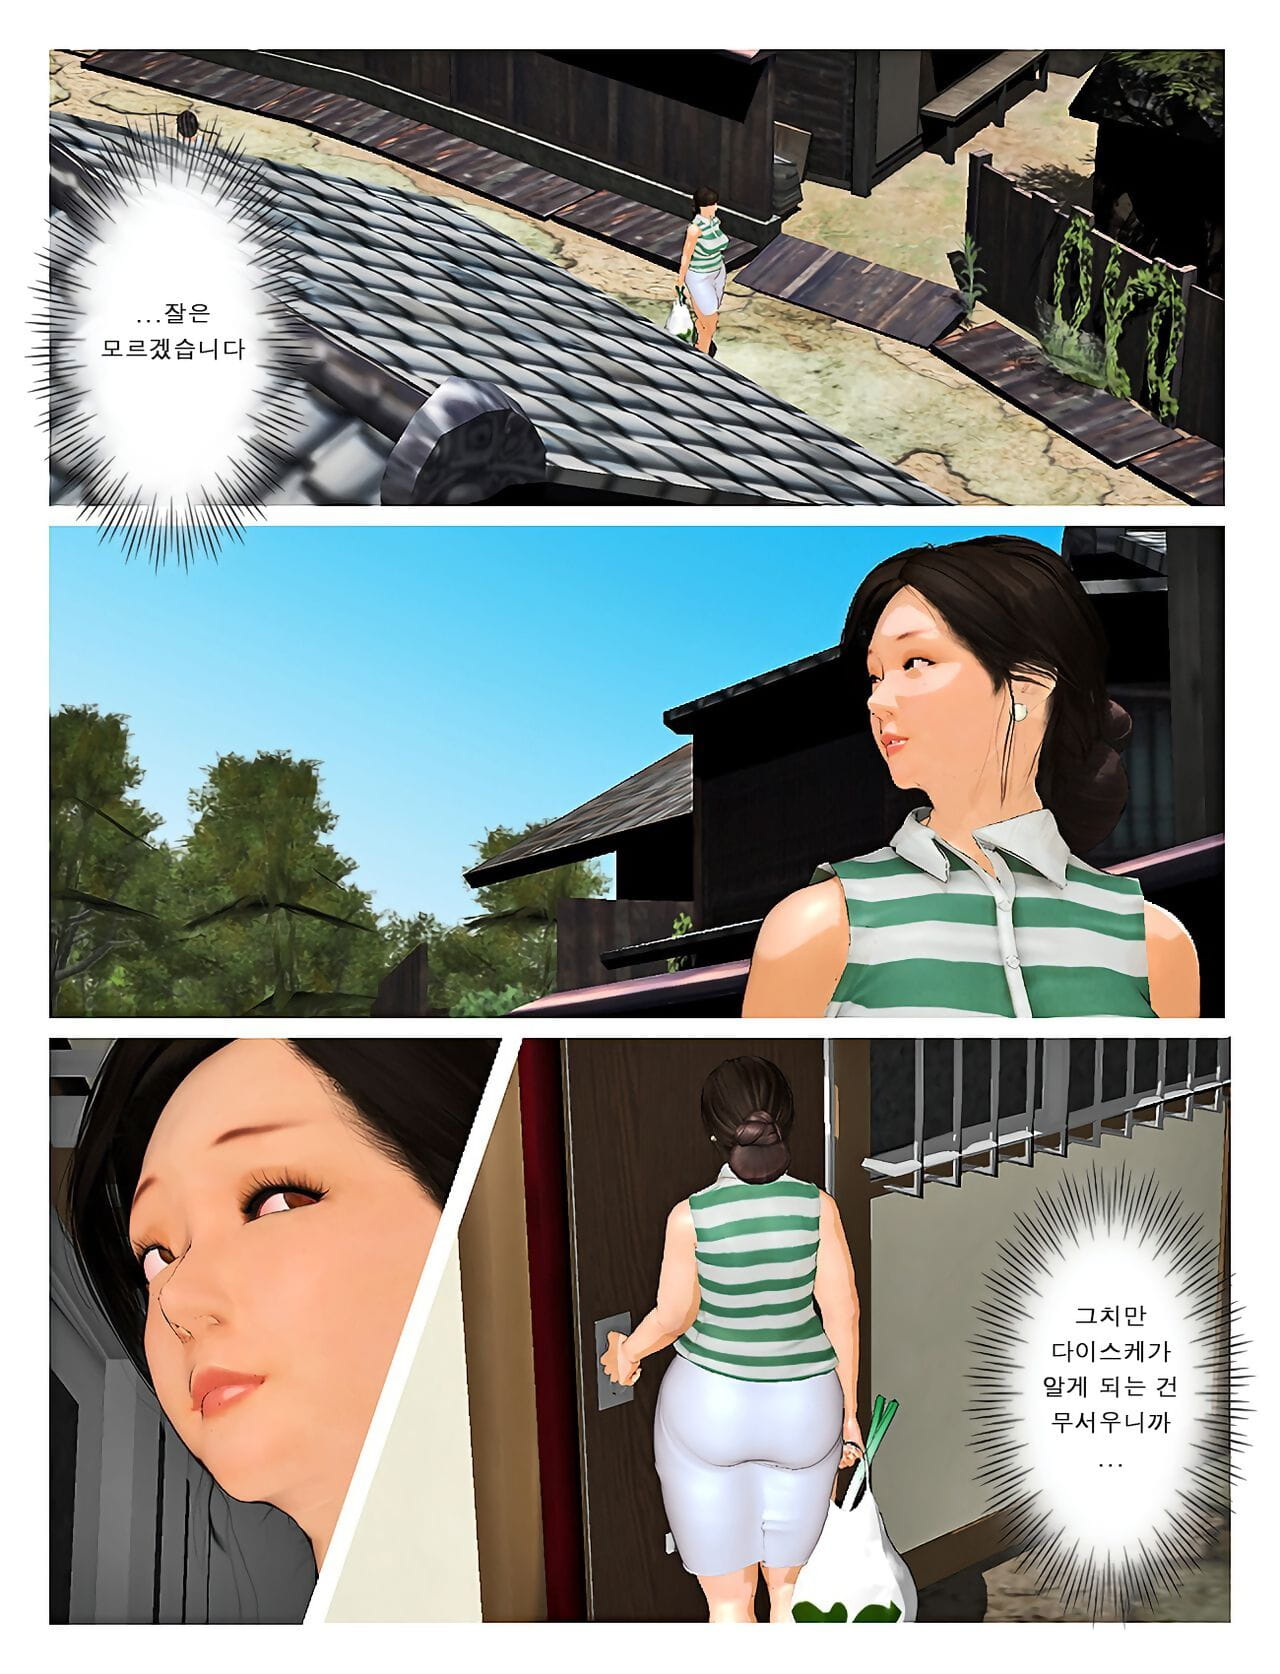 Kyou no misako San 2019:3 오늘의 미사코씨 2019:3 page 1